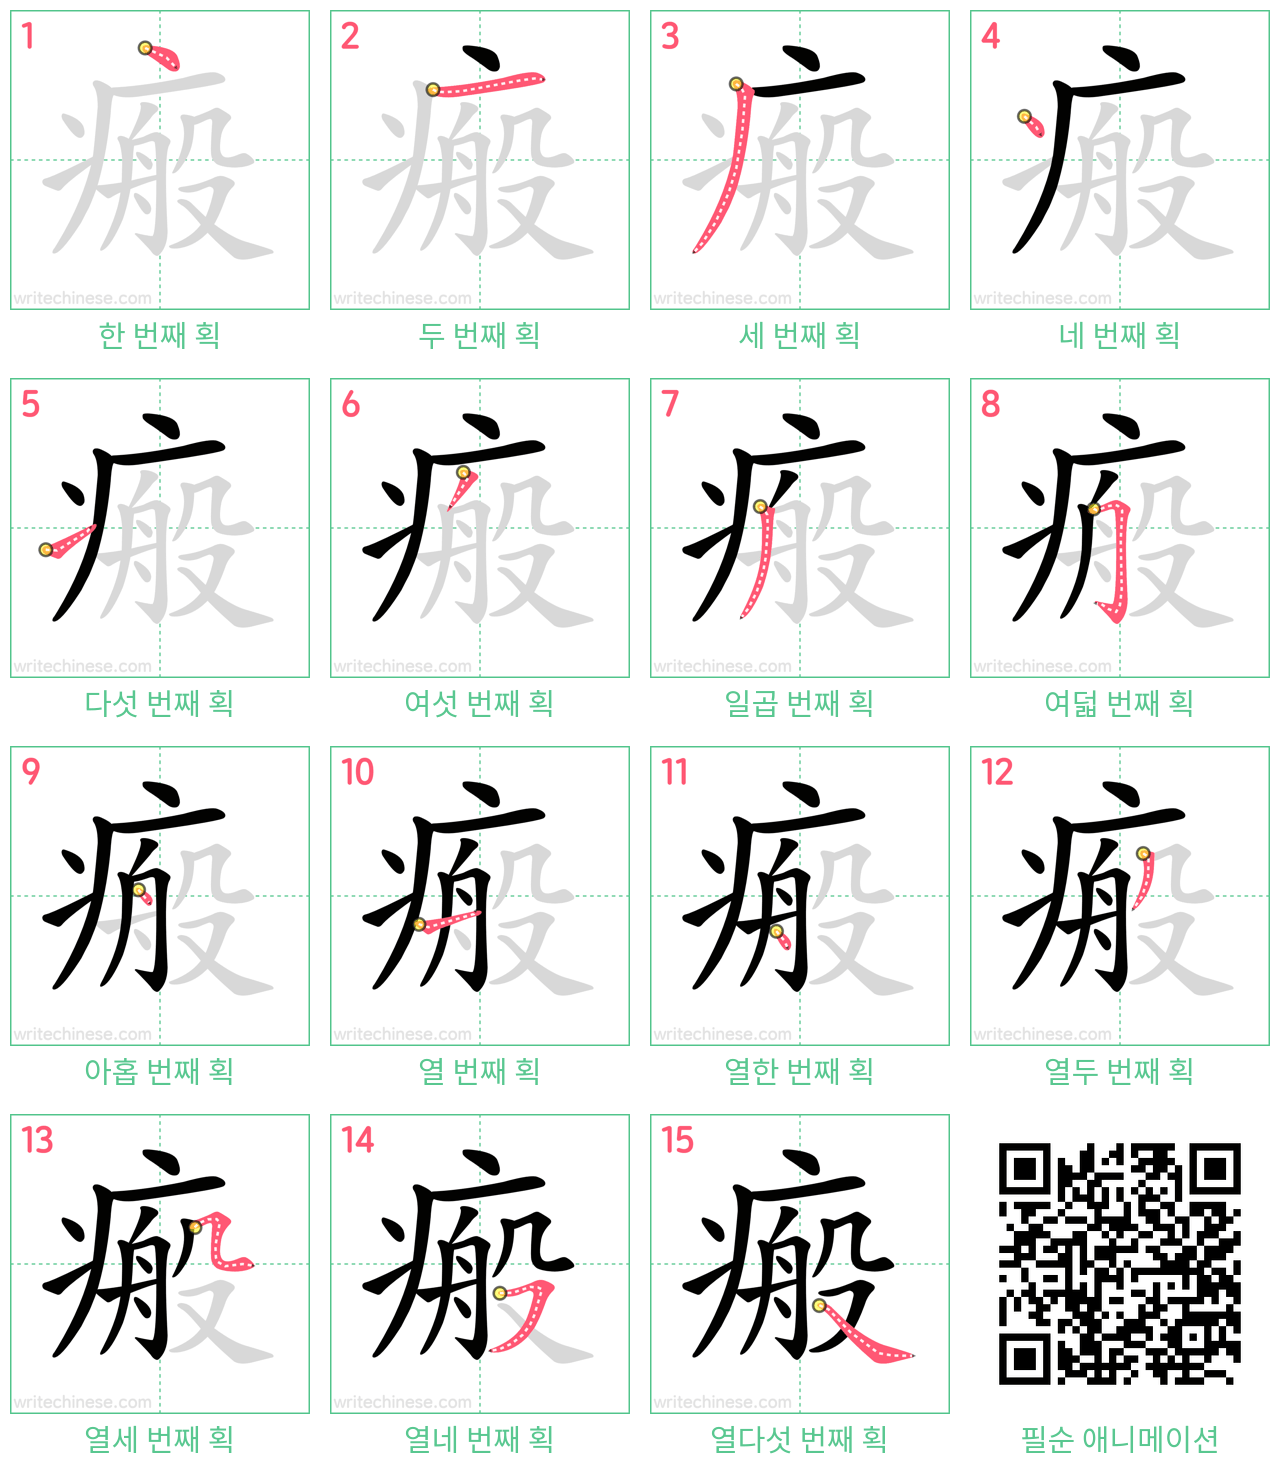 瘢 step-by-step stroke order diagrams